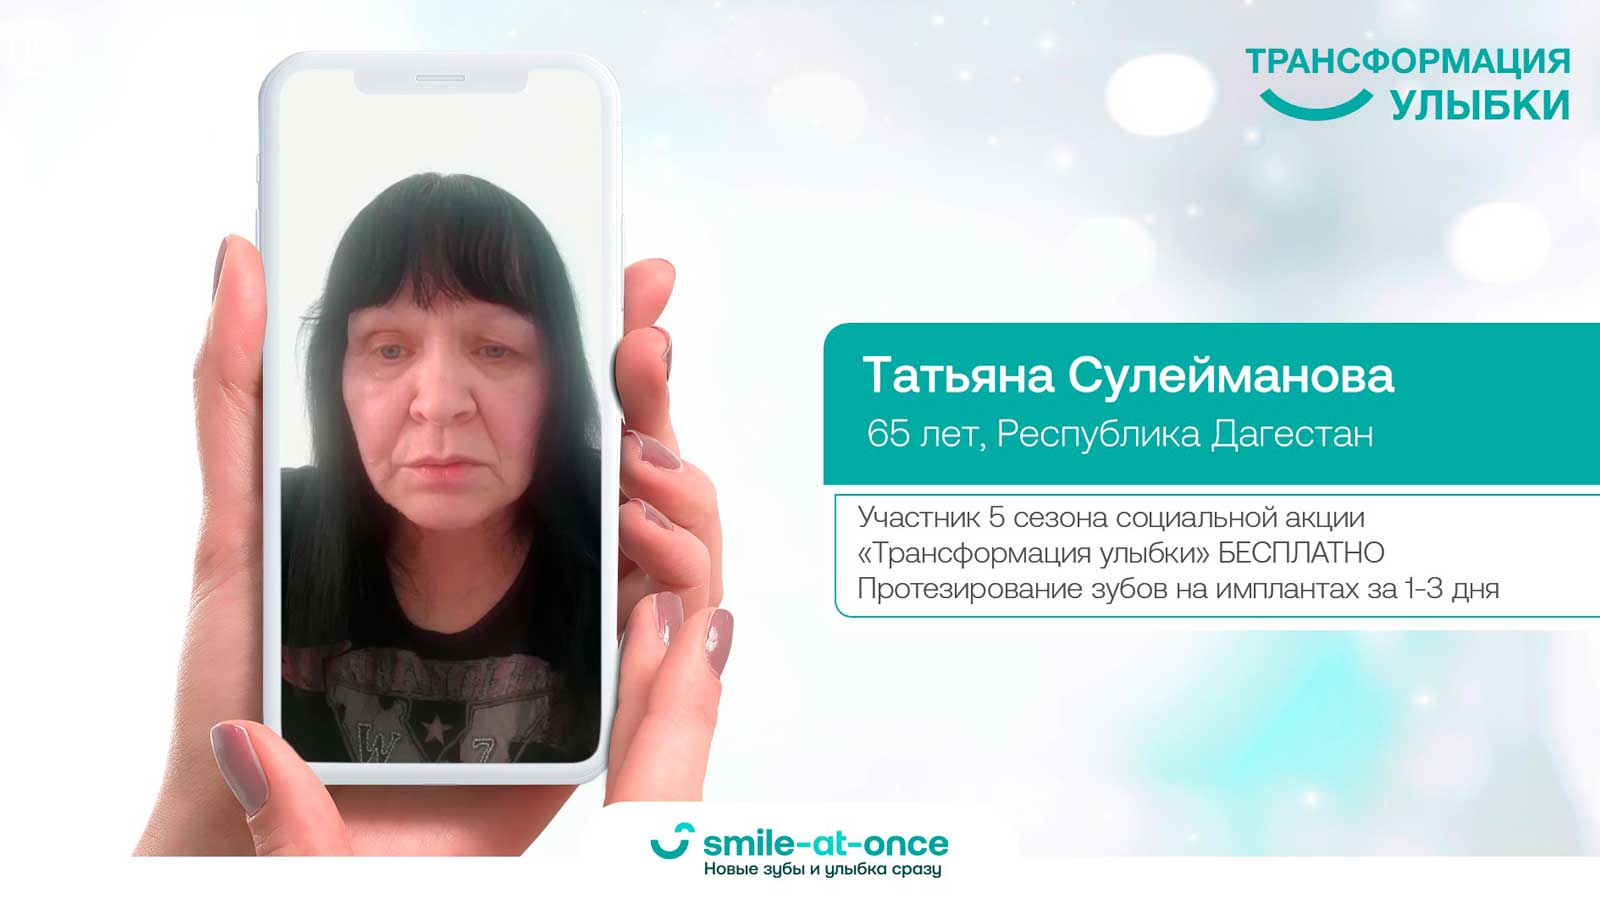 Сулейманова Татьяна Шахмардановна